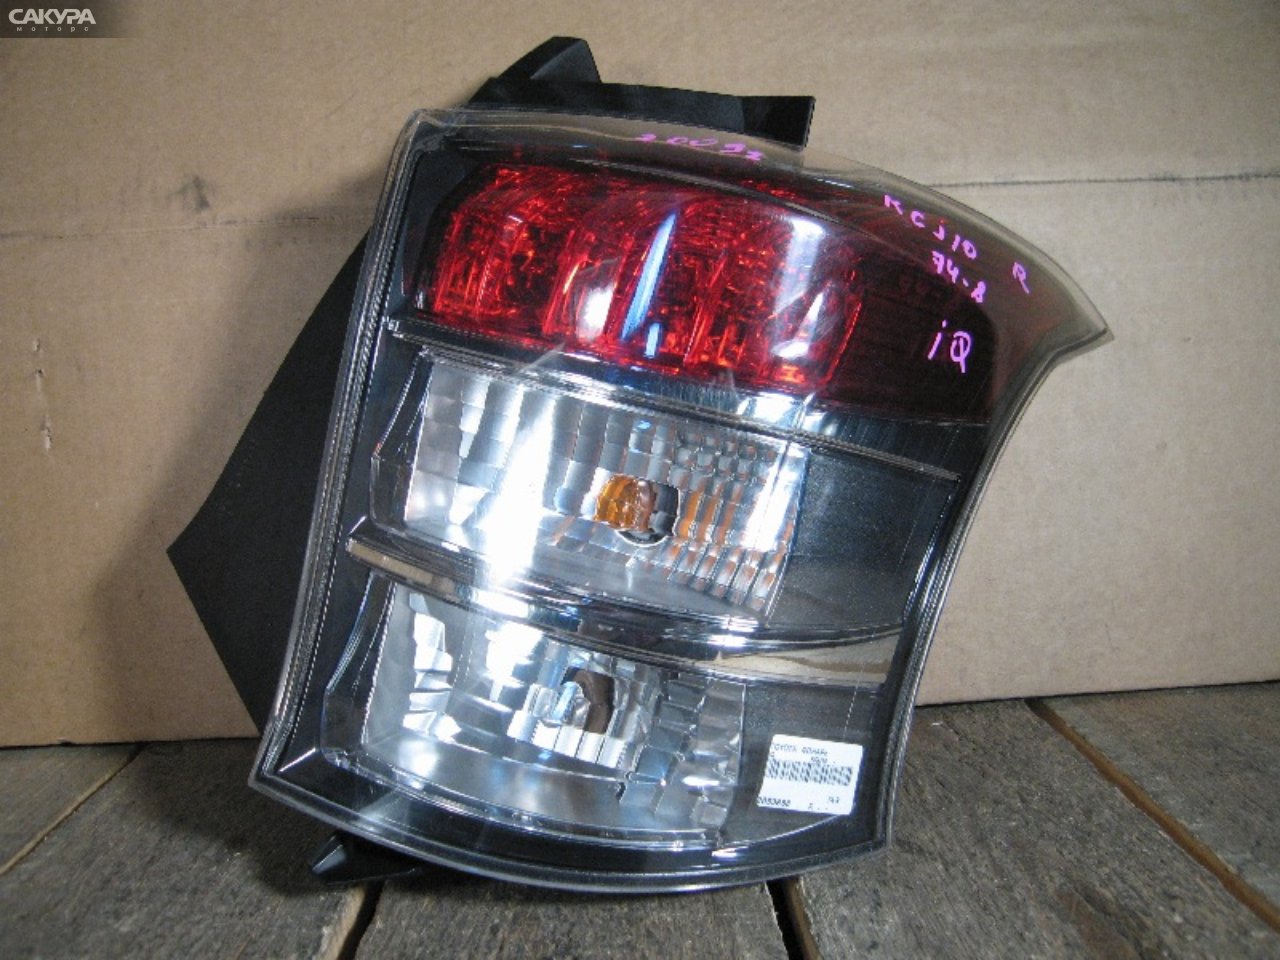 Фонарь стоп-сигнала правый Toyota IQ KGJ10 74-8: купить в Сакура Абакан.